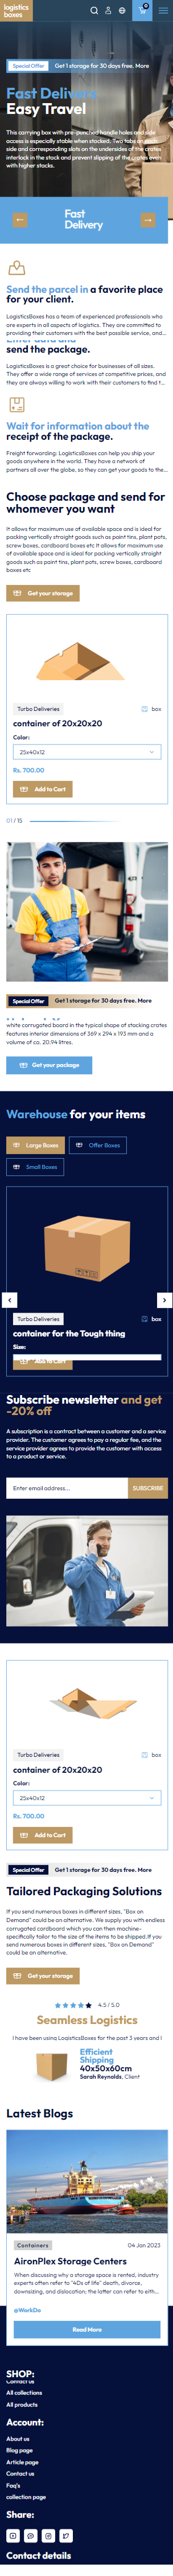 Logistics boxes WordPress Theme - WorkDo